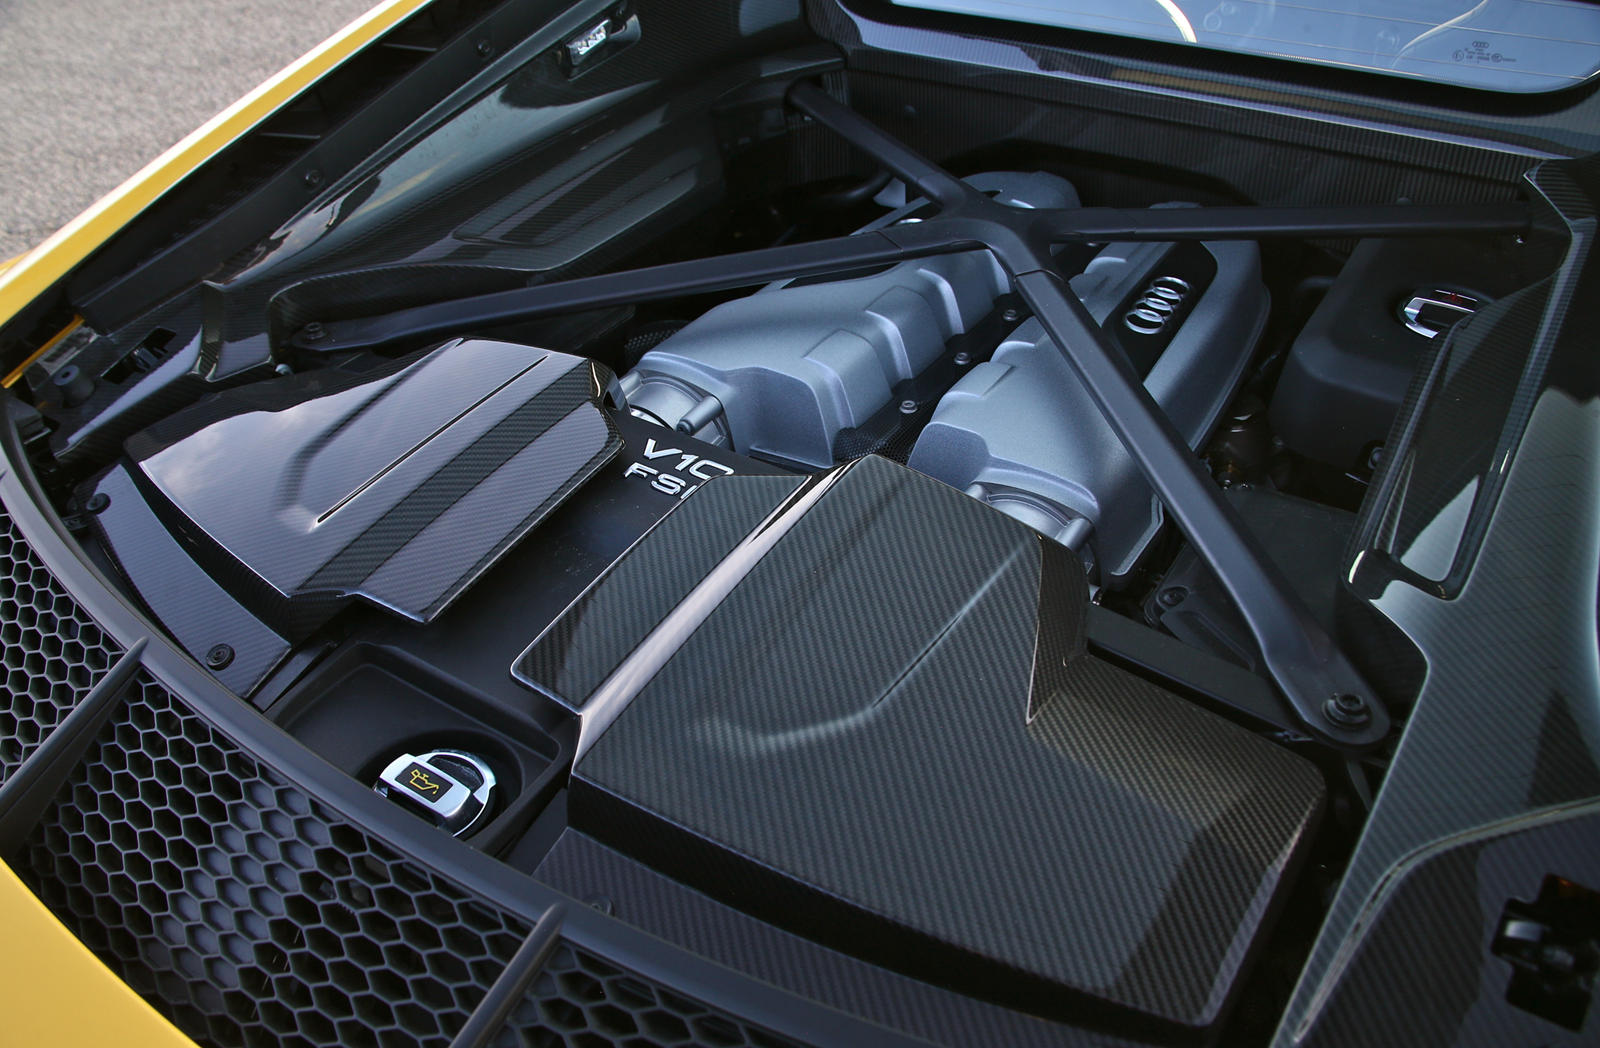 В мае прошлого года Audi объявил о существовании Project Artemis, целью которого является запуск новых электромобилей как можно быстрее и дешевле без каких-либо компромиссов. Первый высокоавтоматизированный автомобиль Audi, также входящий в состав эт